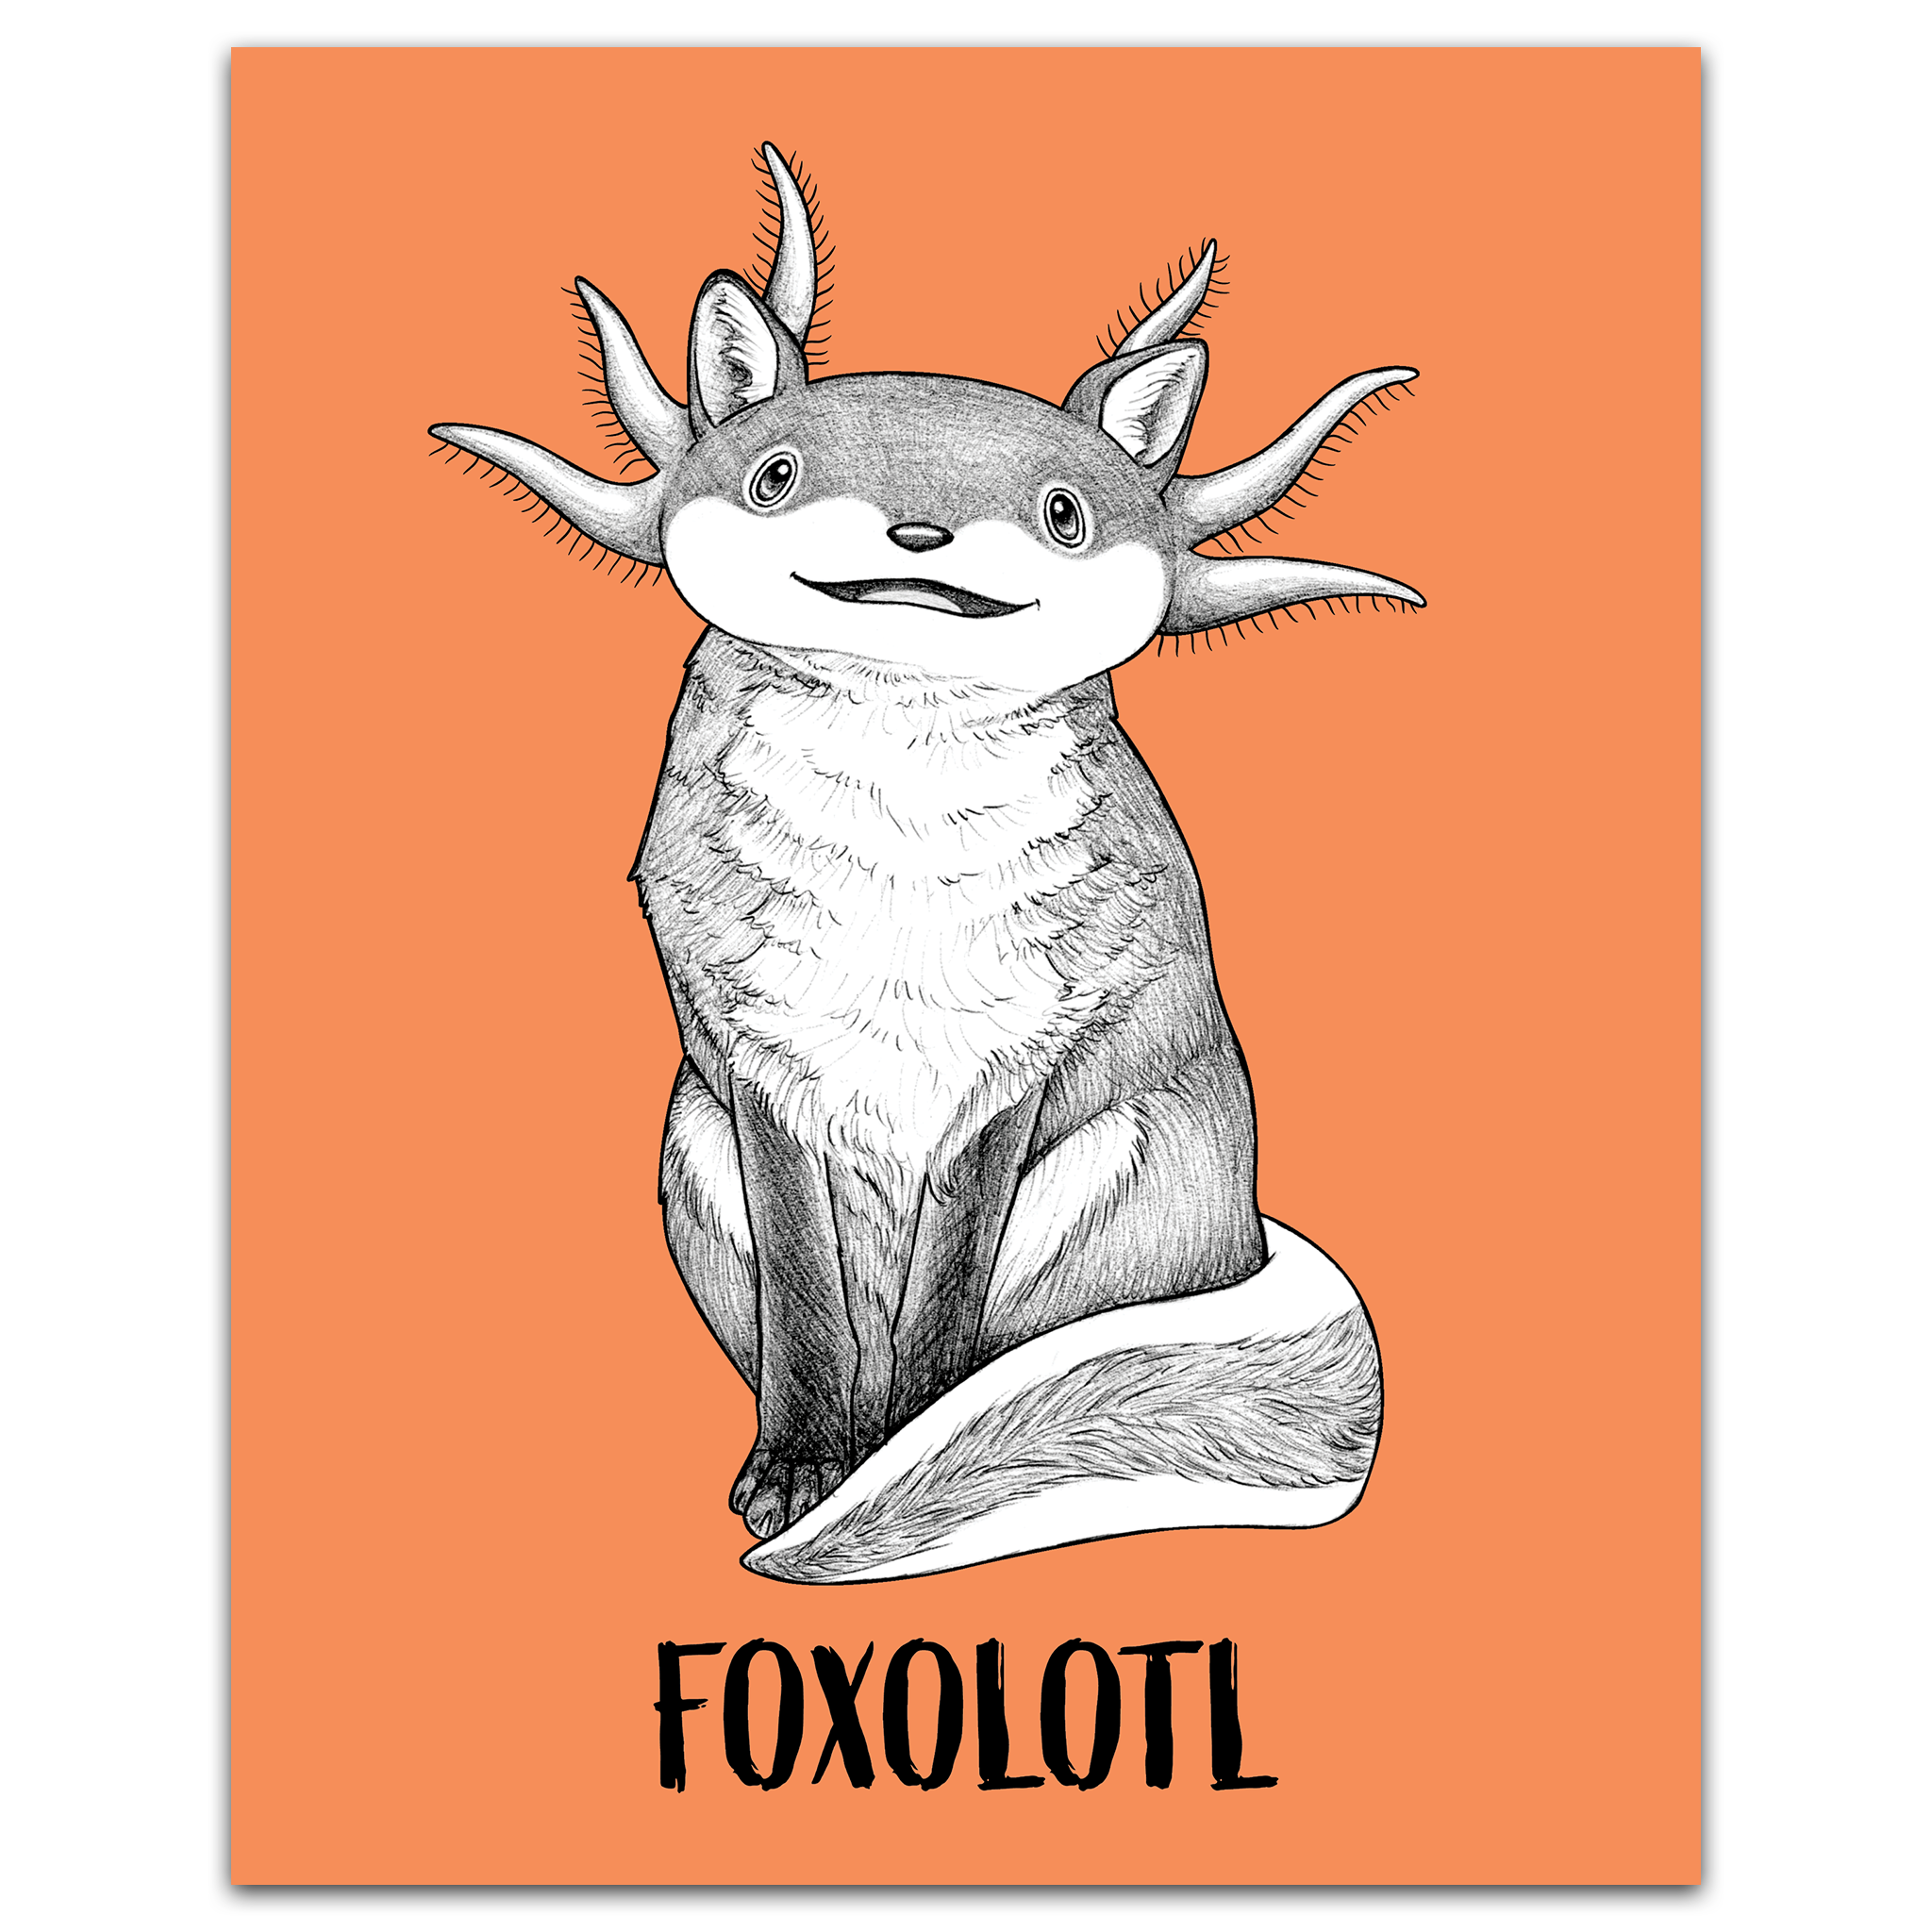 Foxolotl 8x10" Color Print